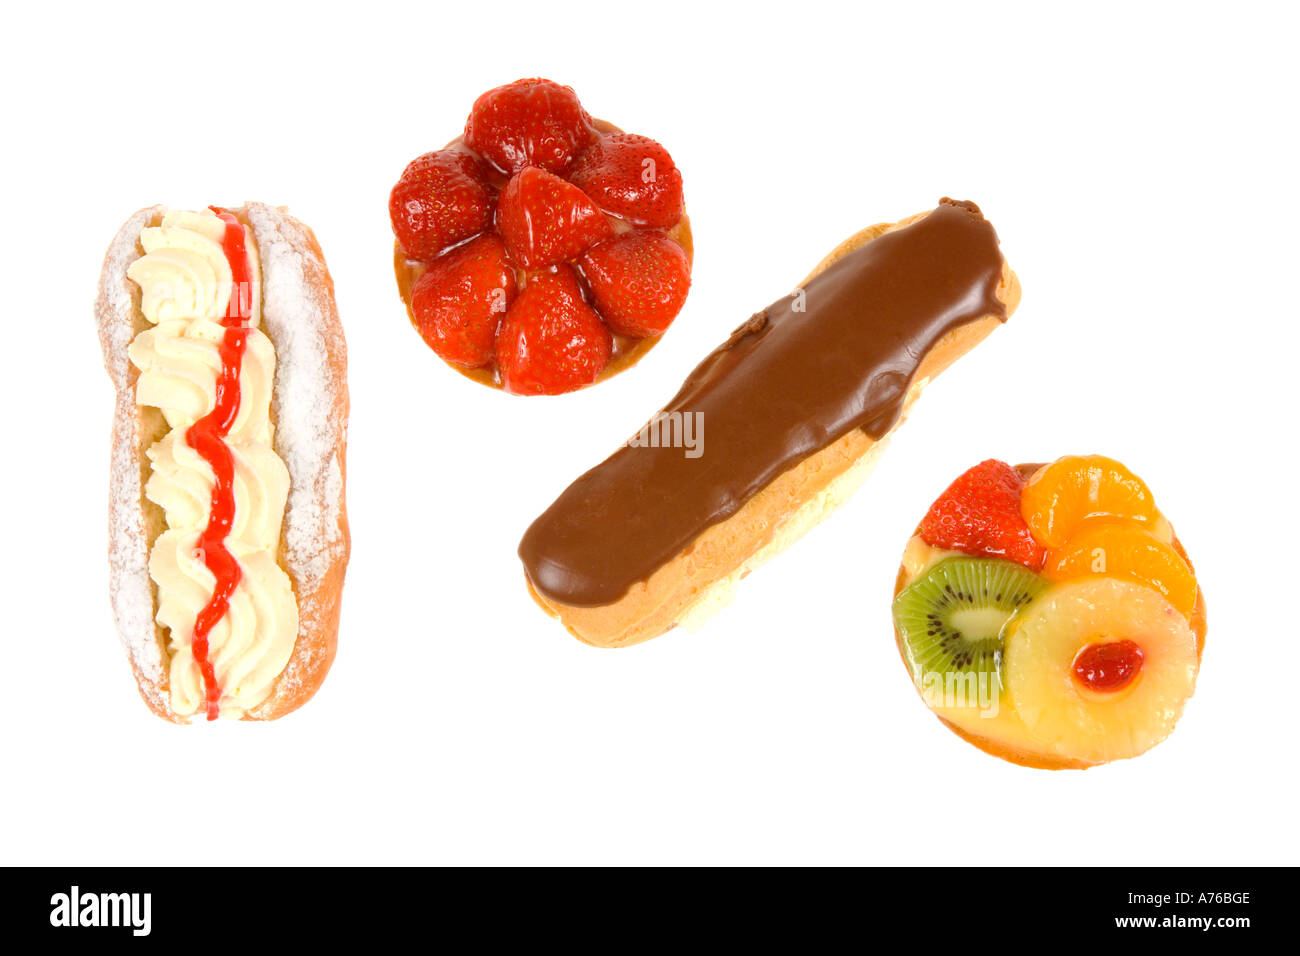 Affichage d'un assortiment de gâteaux aux fruits et crème sur un fond blanc, pur. Banque D'Images